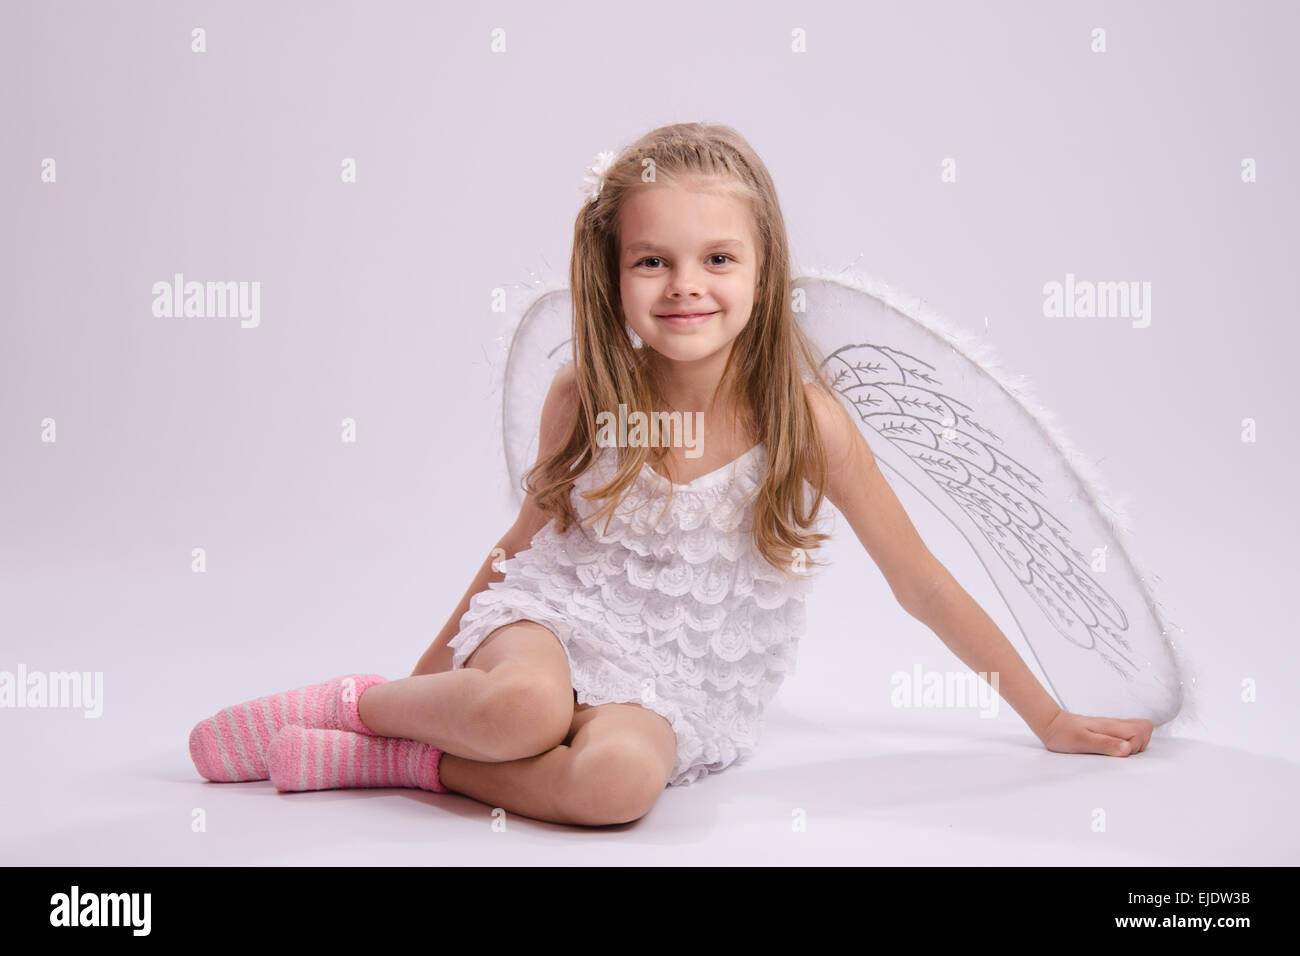 6 anno vecchia ragazza in un bright angel costume con ali su sfondo bianco Foto Stock